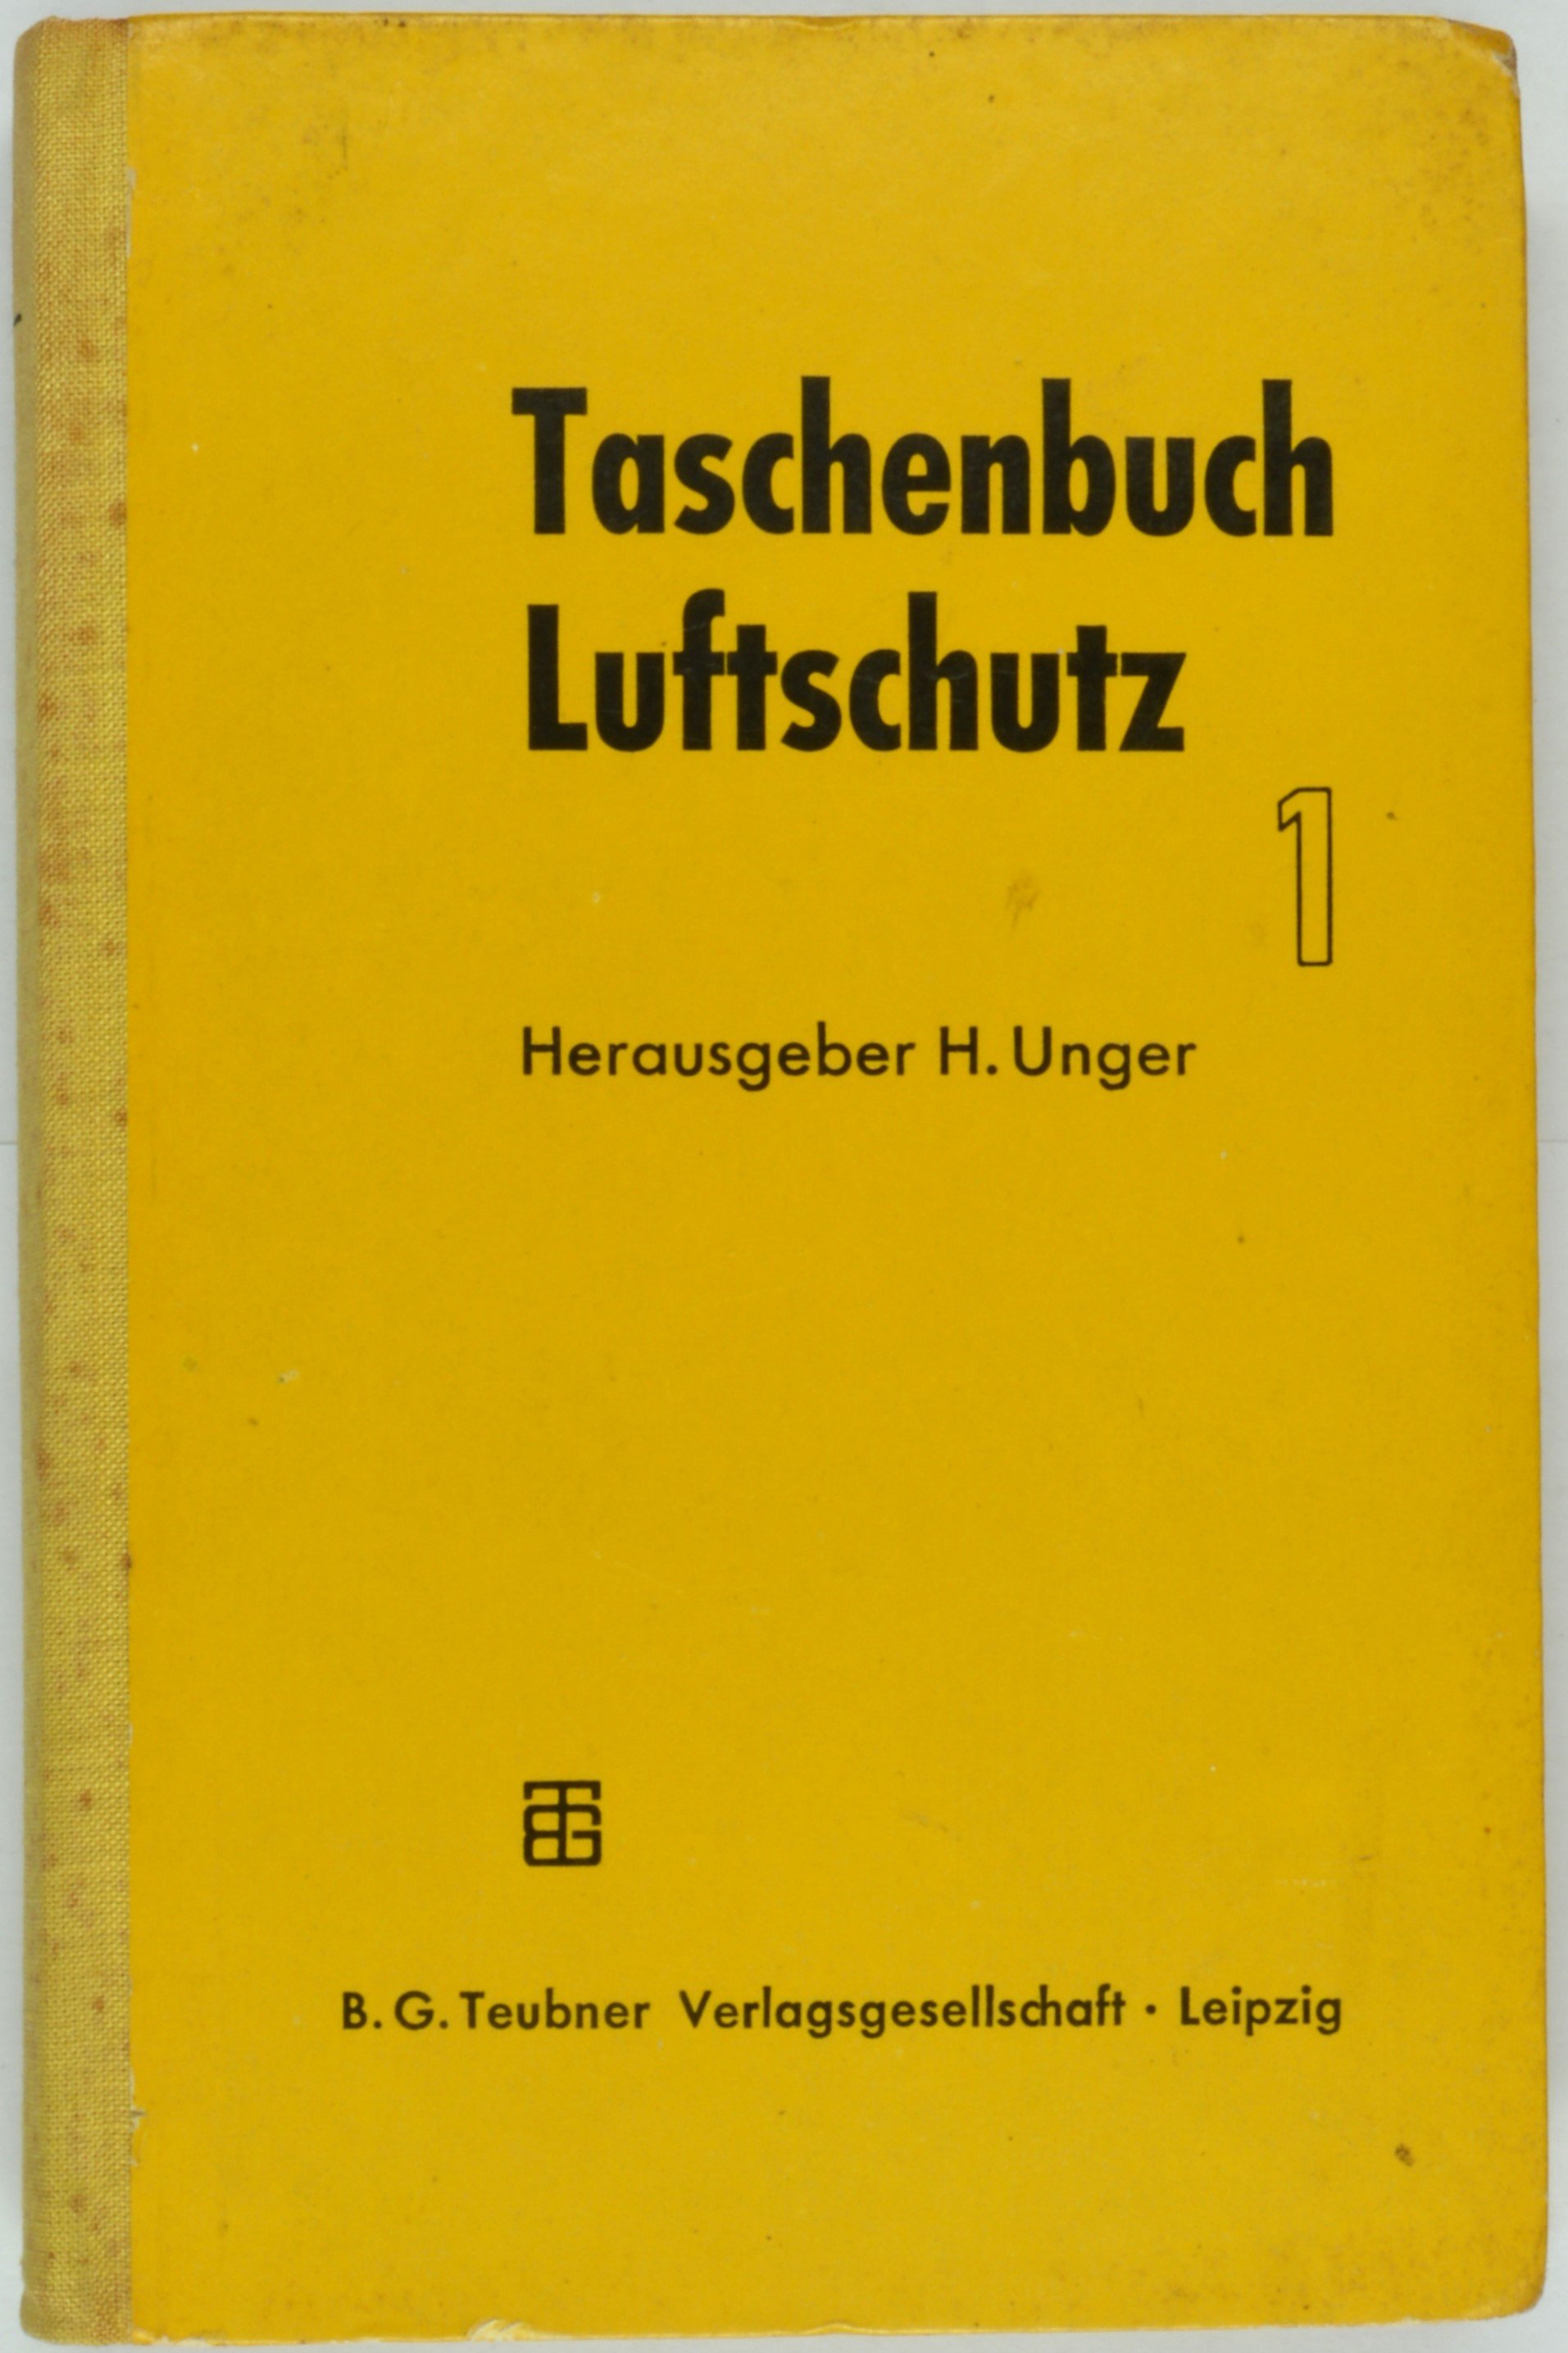 Buch "Taschenbuch Luftschutz" 1 (DDR Geschichtsmuseum im Dokumentationszentrum Perleberg CC BY-SA)